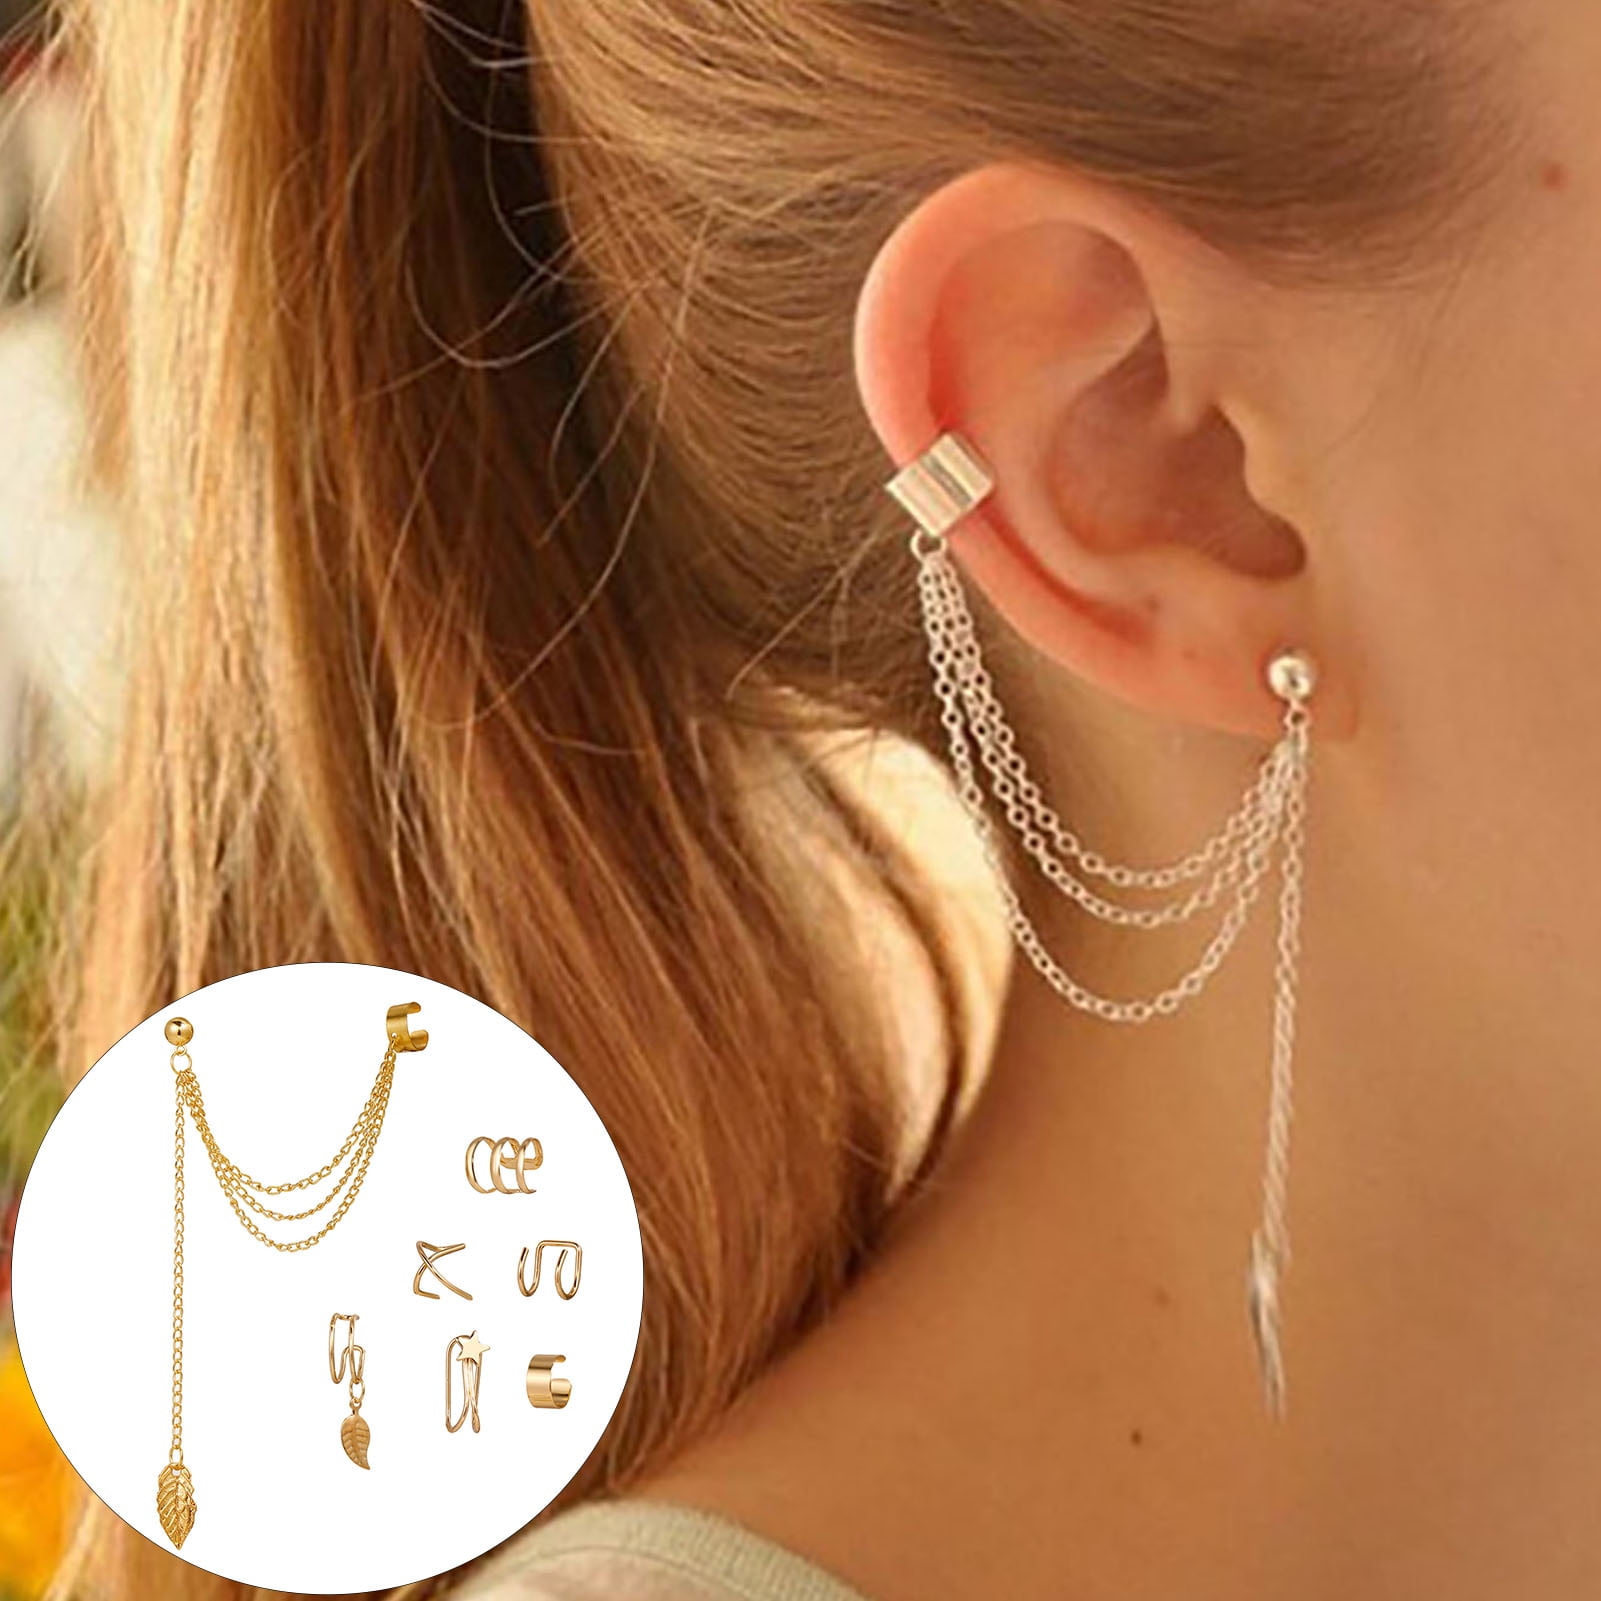 4 Earrings Set, Ear Cuff, Helix Earring, Cartilage Piercing in 925 Sterling  Silver and Gold Plated, Huggie Earrings, Ear Jacket Earring -  Norway